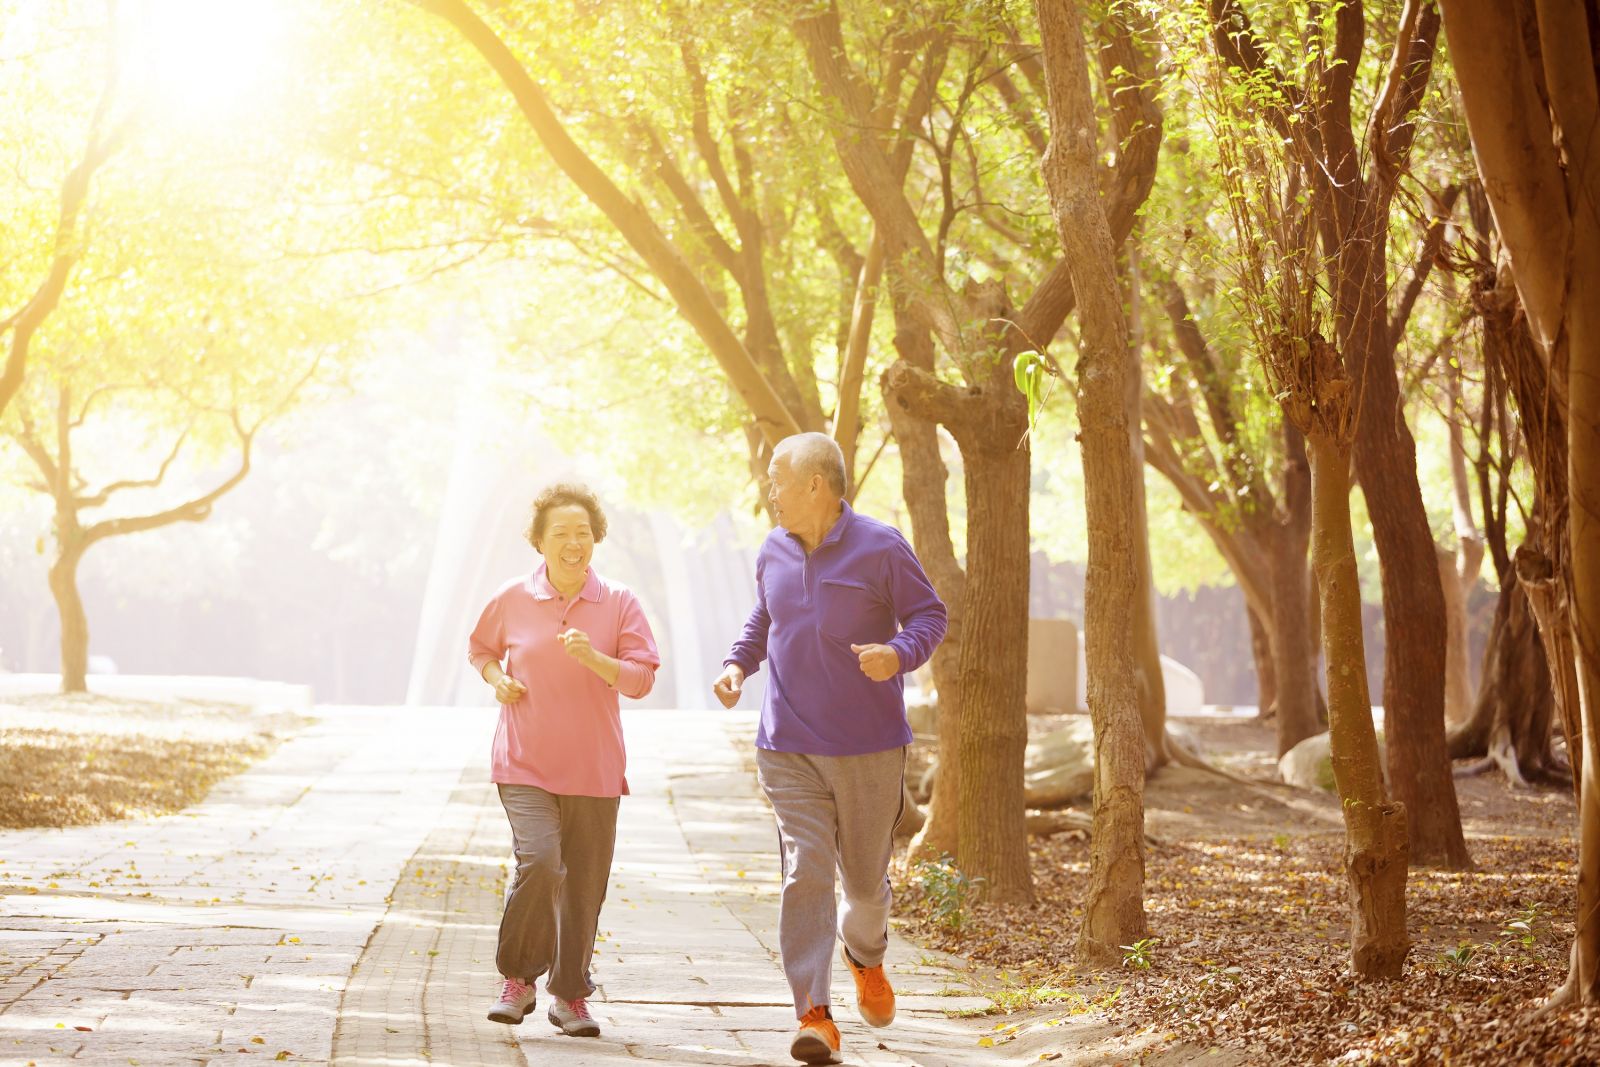 Tập thể dục nhẹ nhàng đều đặn giúp chăm sóc sức khỏe người cao tuổi